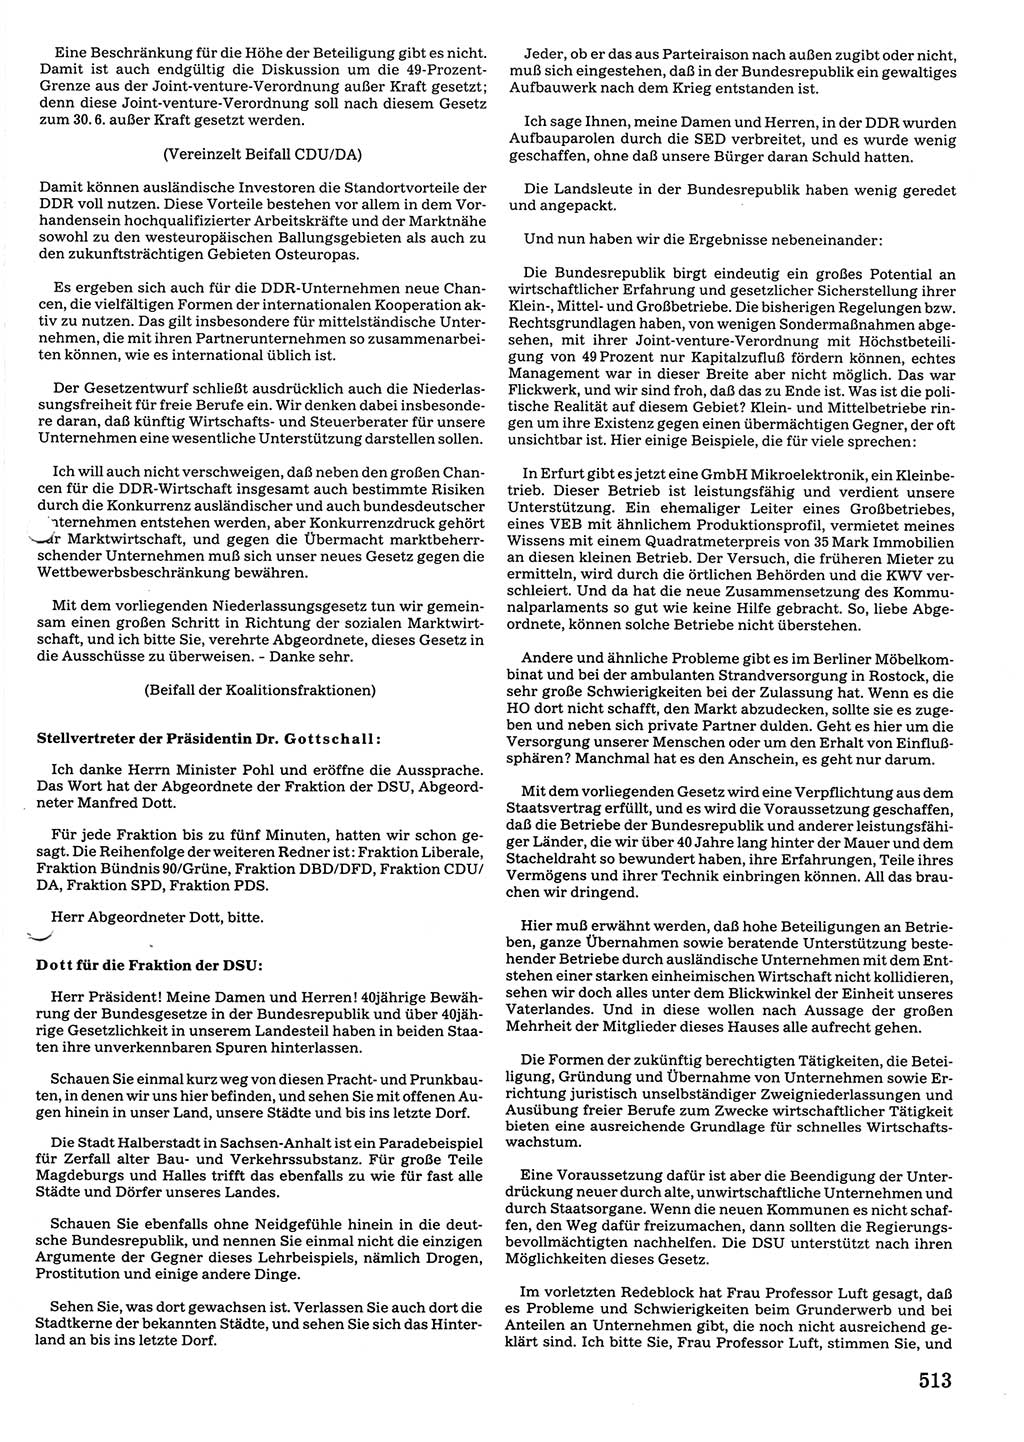 Tagungen der Volkskammer (VK) der Deutschen Demokratischen Republik (DDR), 10. Wahlperiode 1990, Seite 513 (VK. DDR 10. WP. 1990, Prot. Tg. 1-38, 5.4.-2.10.1990, S. 513)